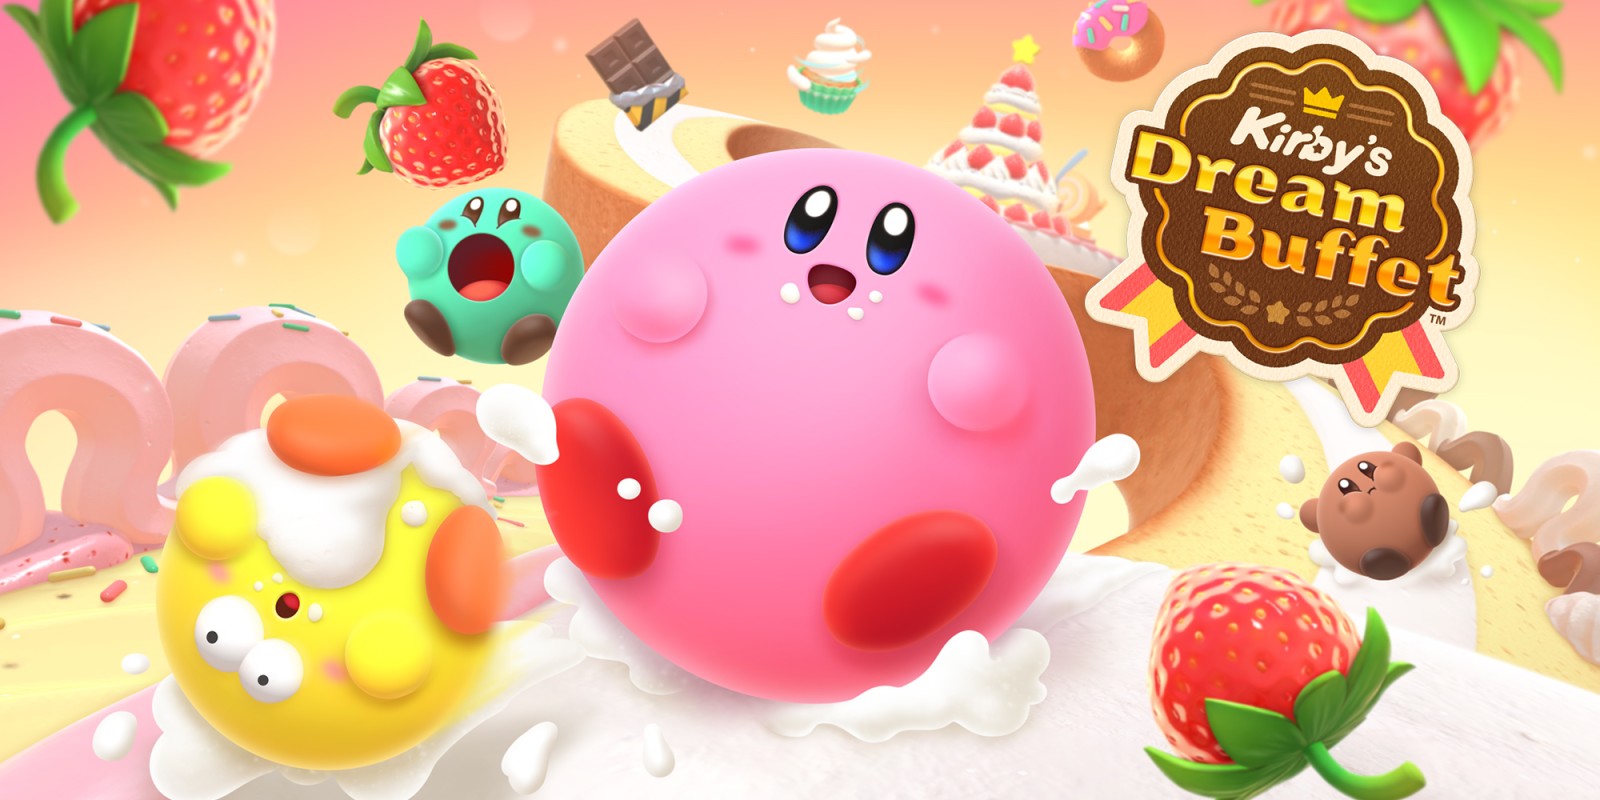 Annuncio di Kirby's Dream Buffet - sala giochi competitiva sul mangiare delizie